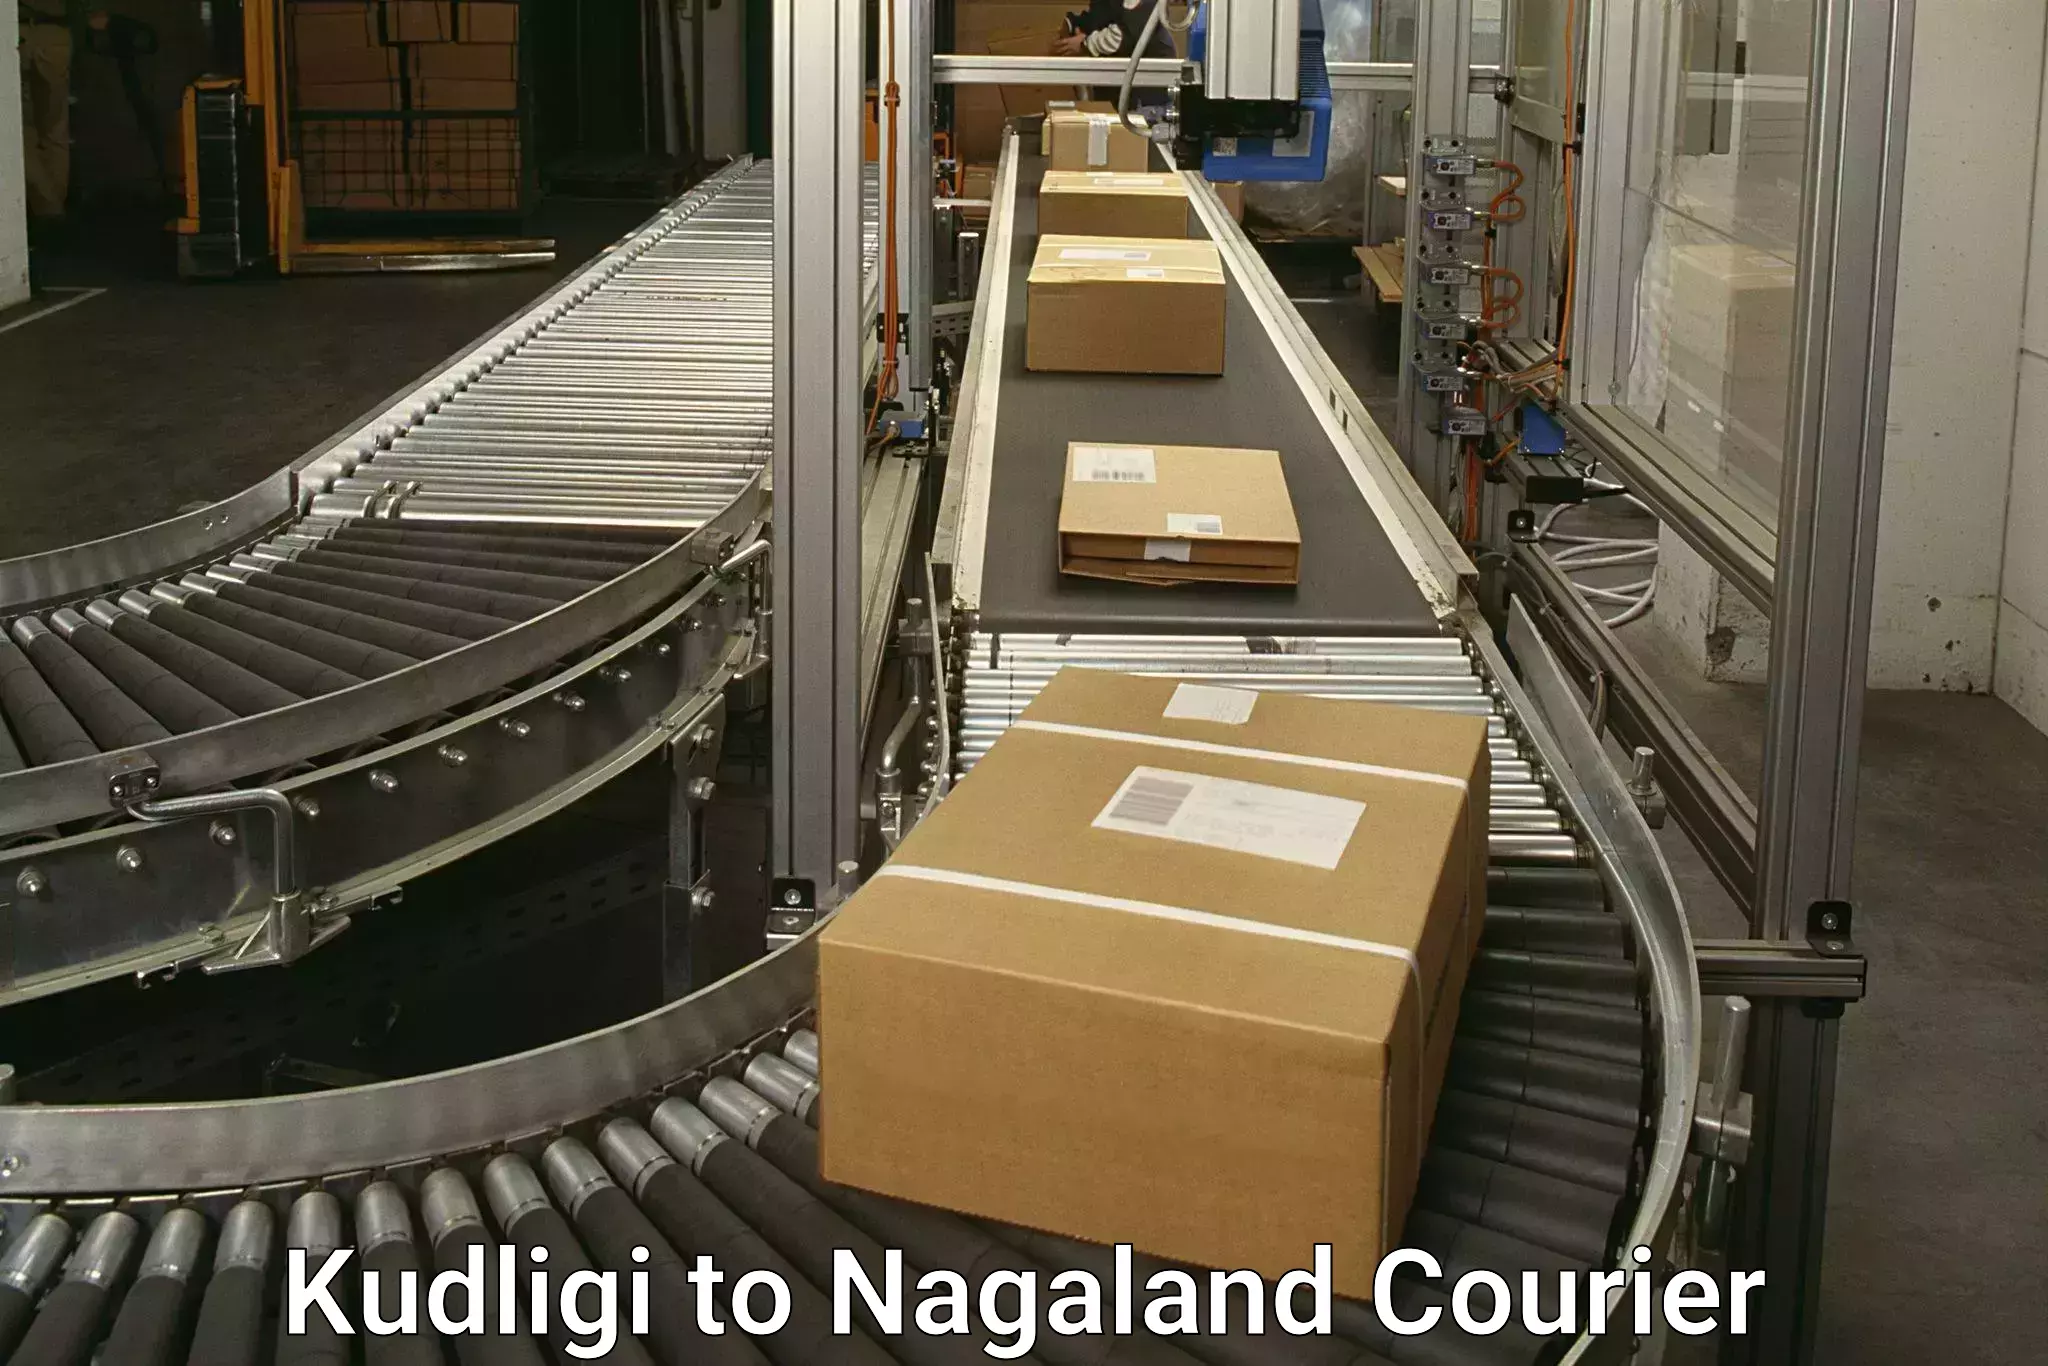 Innovative courier solutions Kudligi to Nagaland